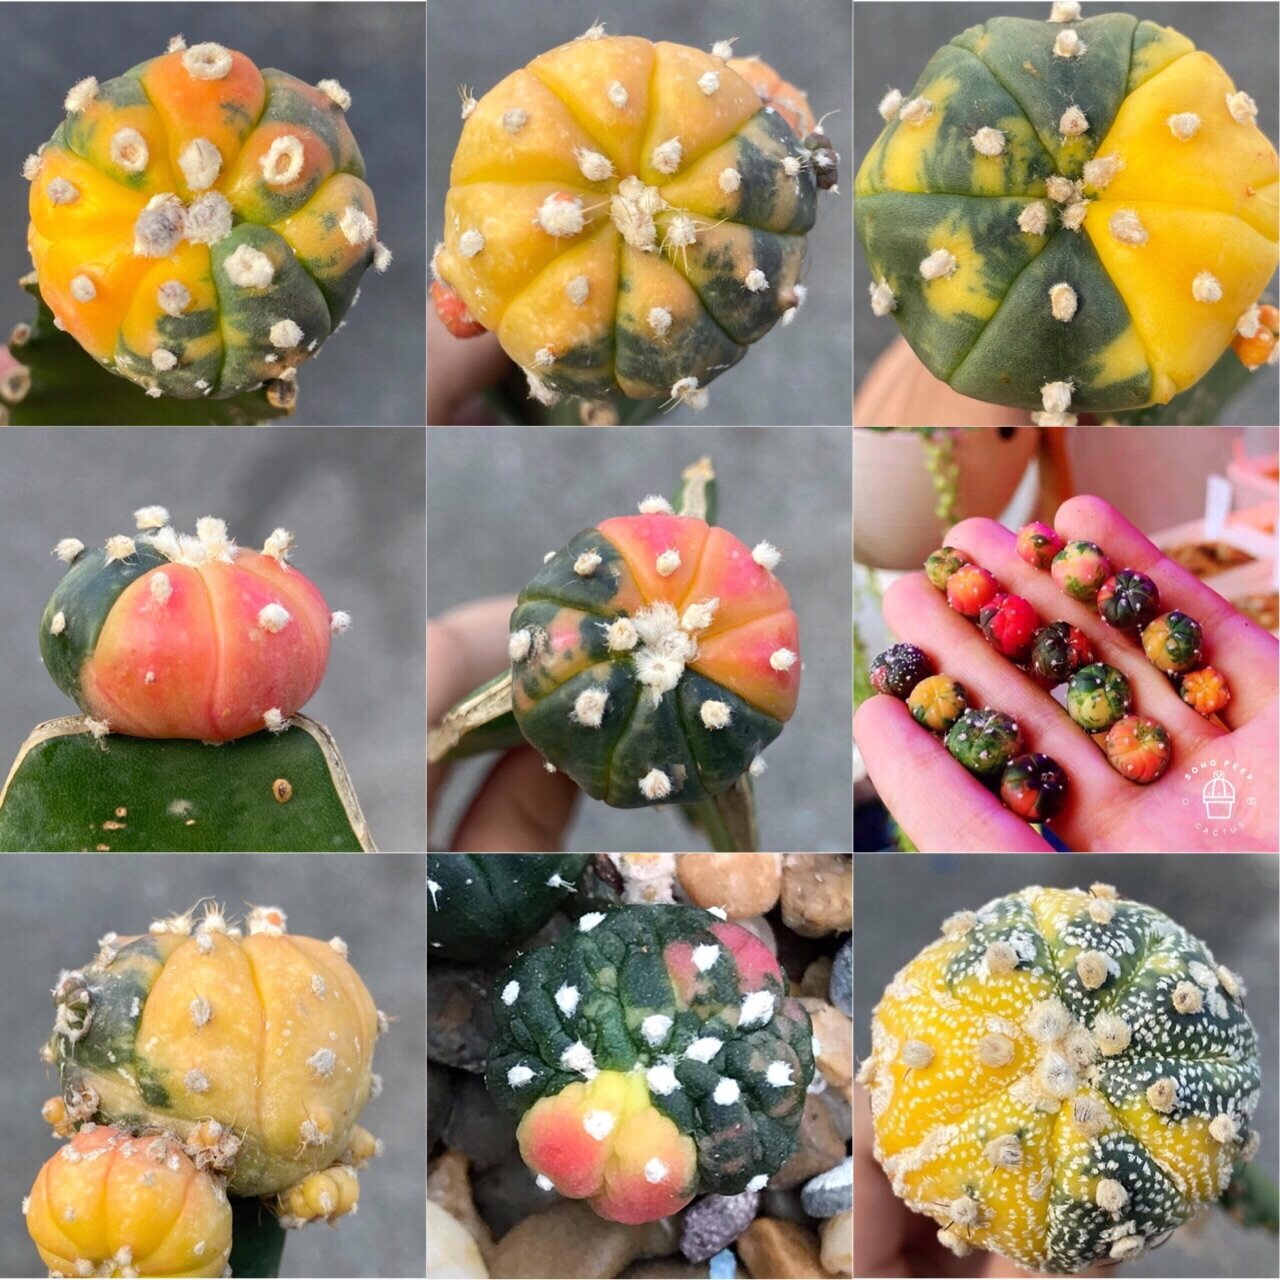 แคคตัส Cactus แอสโตรด่าง สีสัน สดใส Colorful กระบองเพชร แอสโตรไฟตัม (Astrophytum Colorful) ด่างแท้น่ารักๆ มีสีสวย ไม้สะสม(คละสีคละแบบ) Size1.1-5.8cm. 1ต้น/PCs